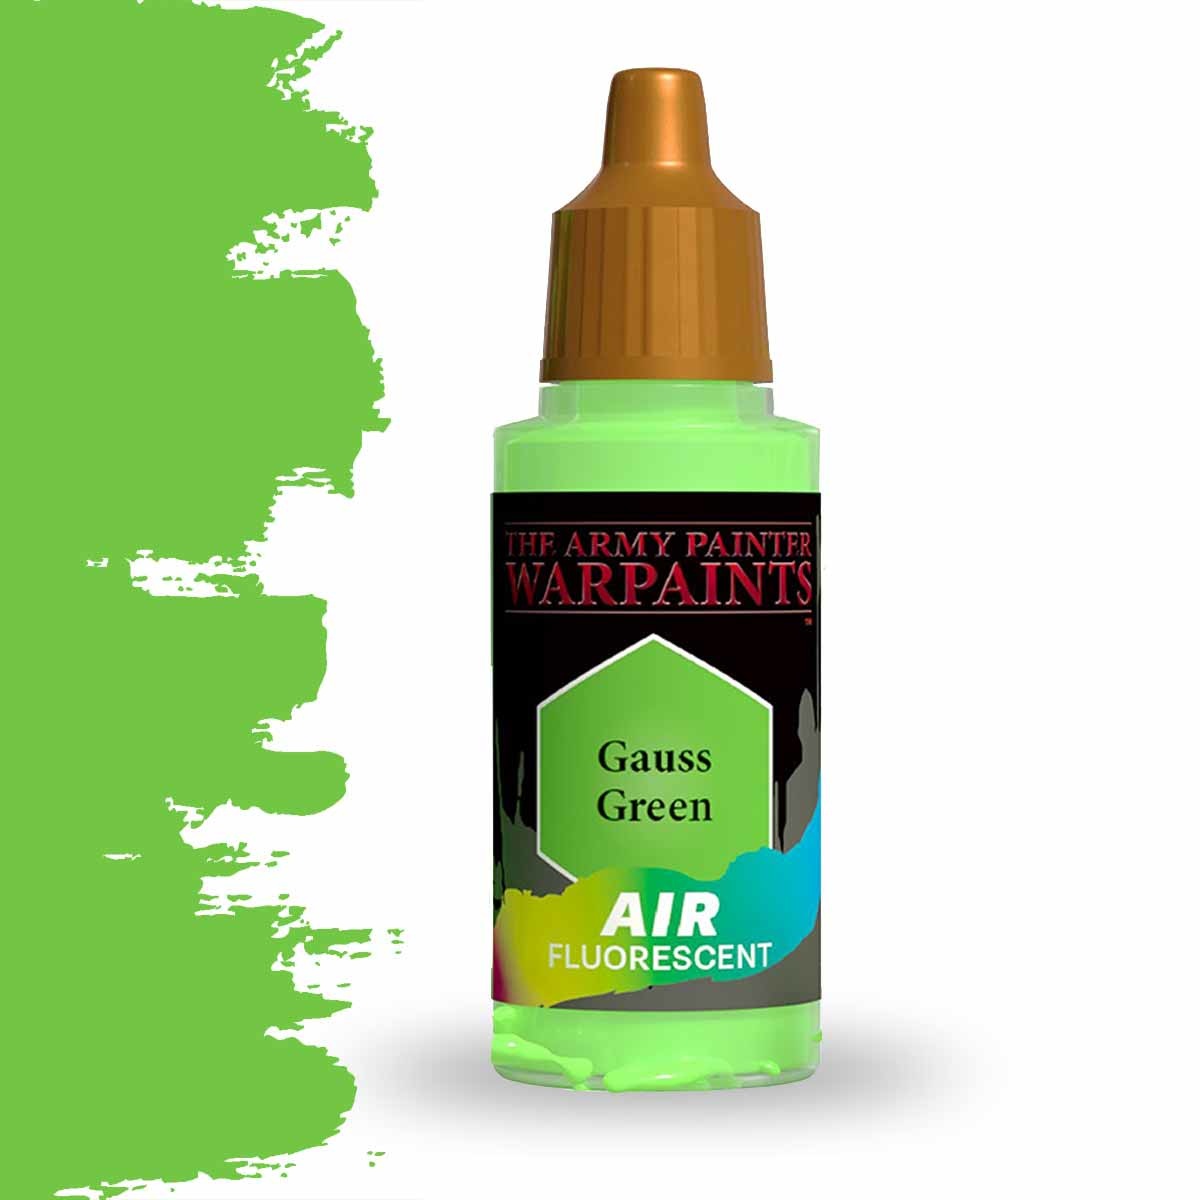 The Army Painter Warpaints Air Fluorescent: Gauss Green (AW1503)